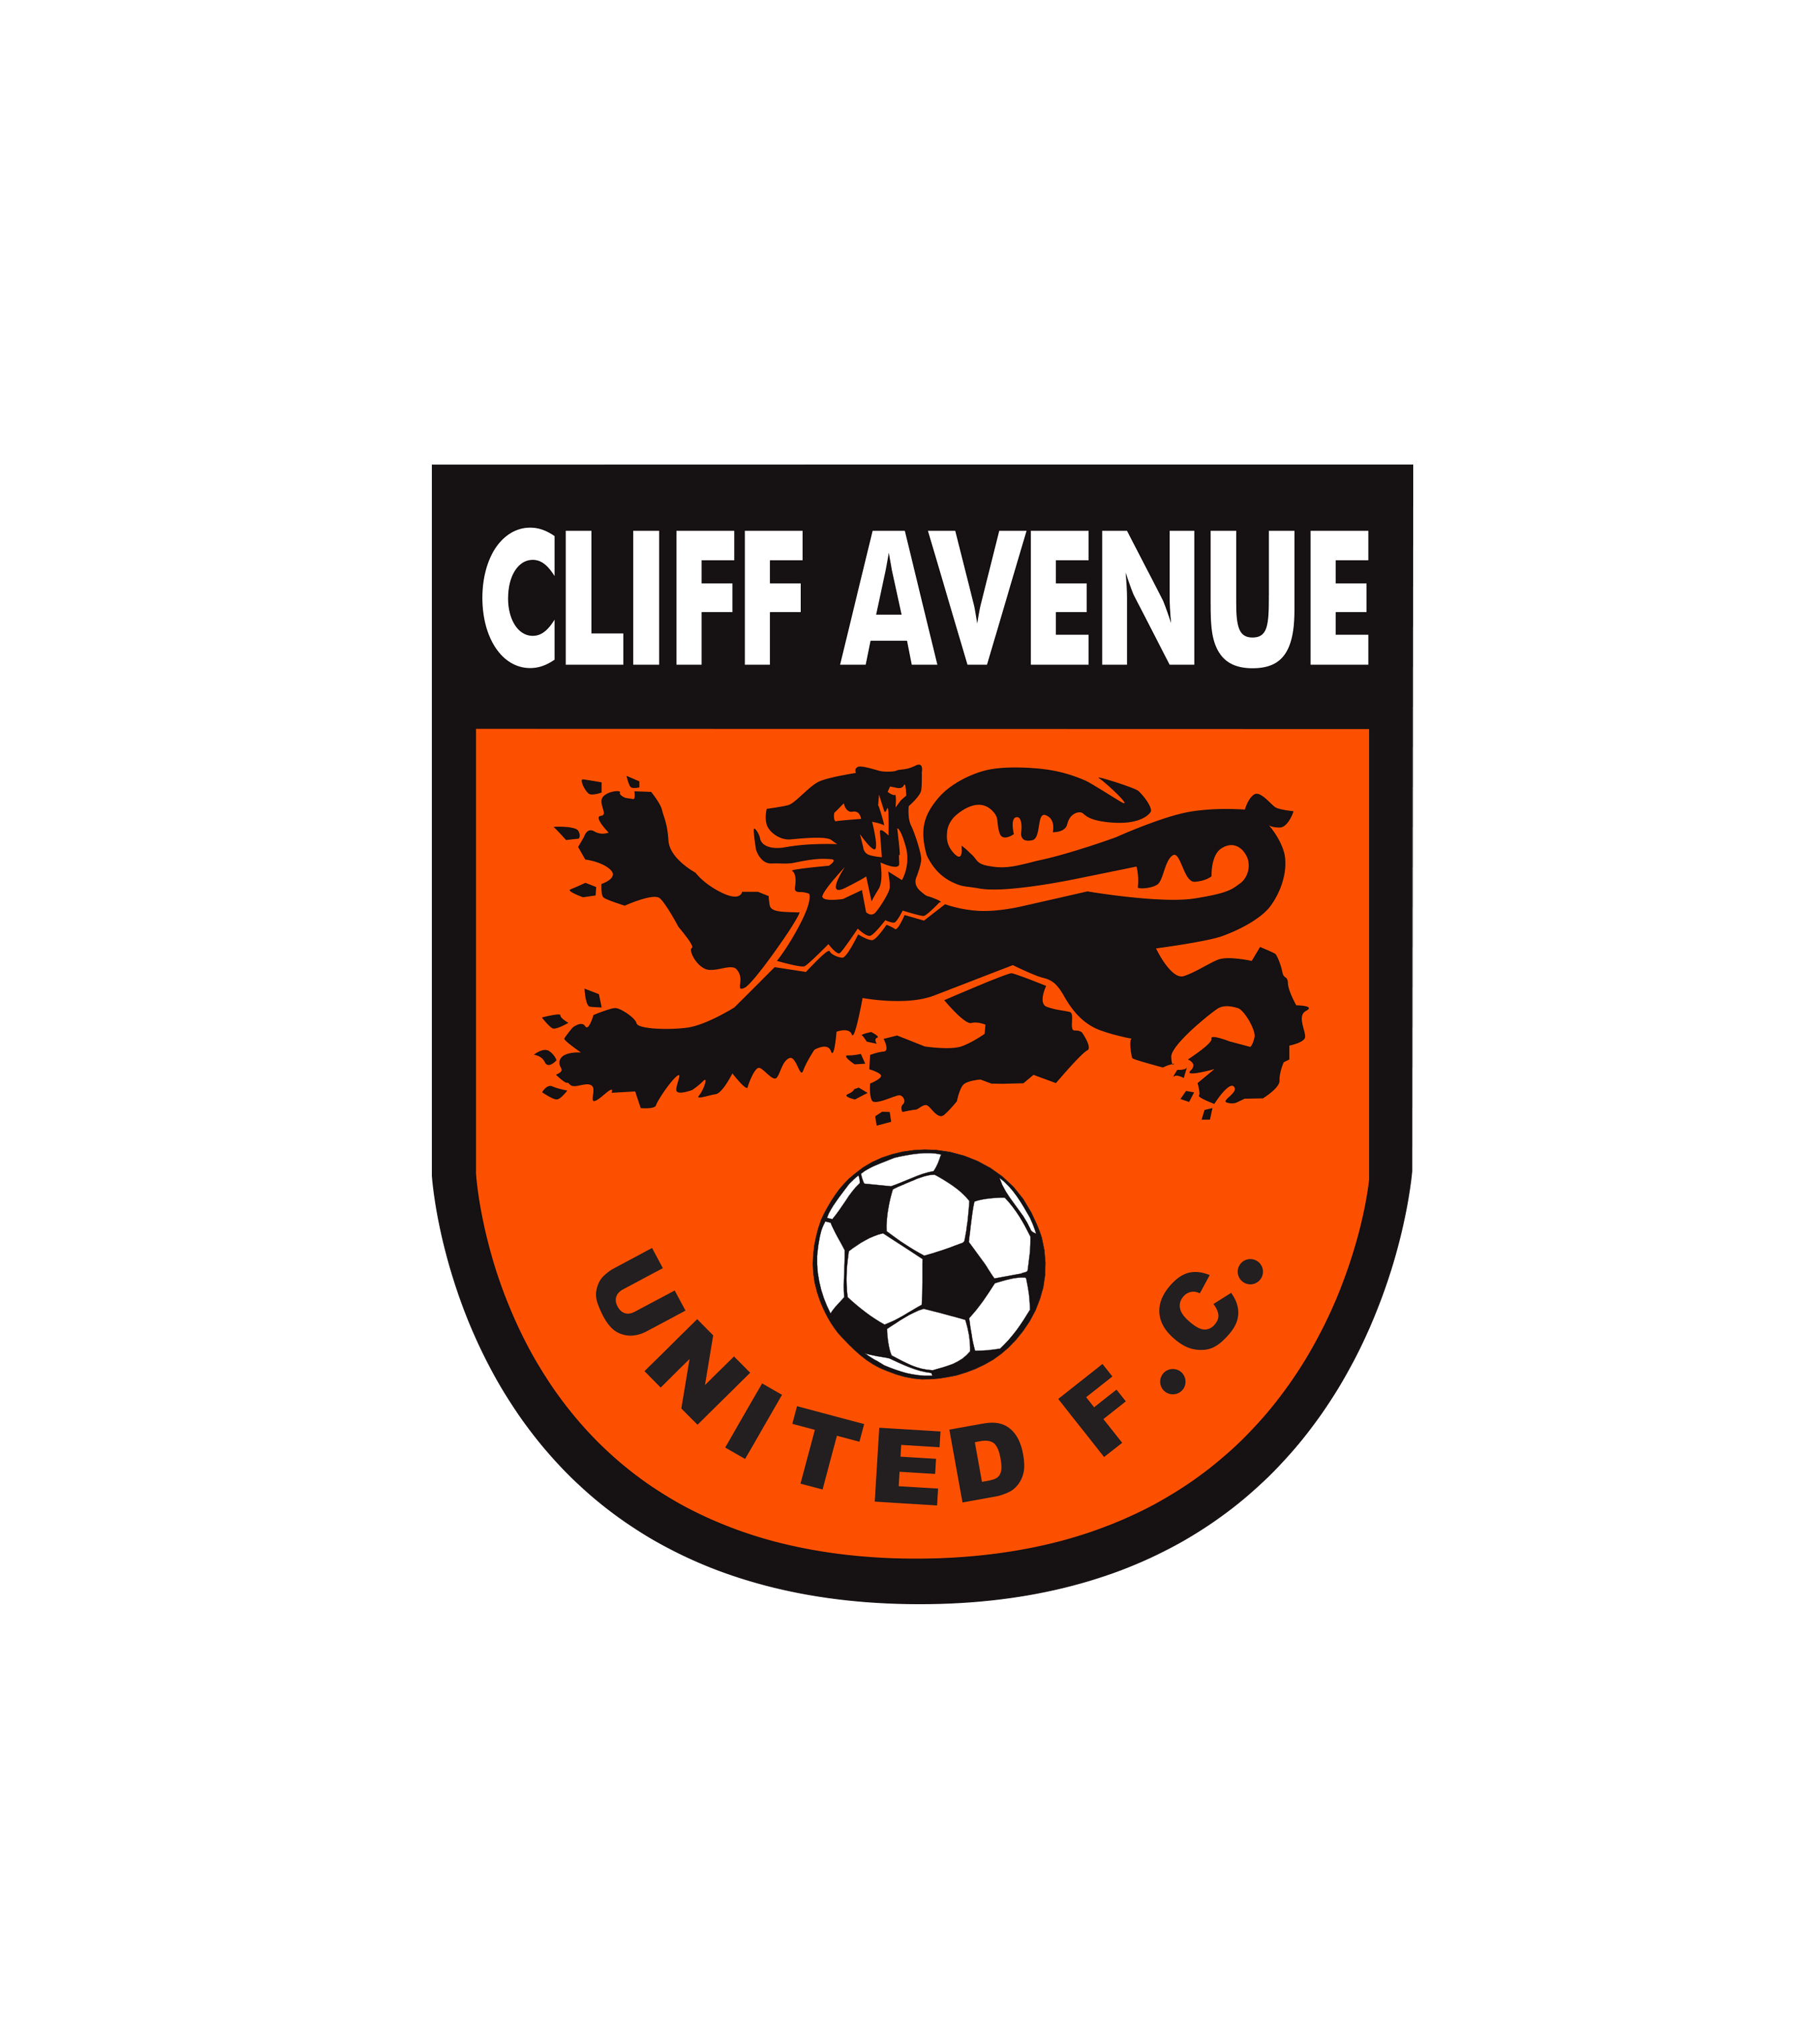 Cliff Avenue United Football Club